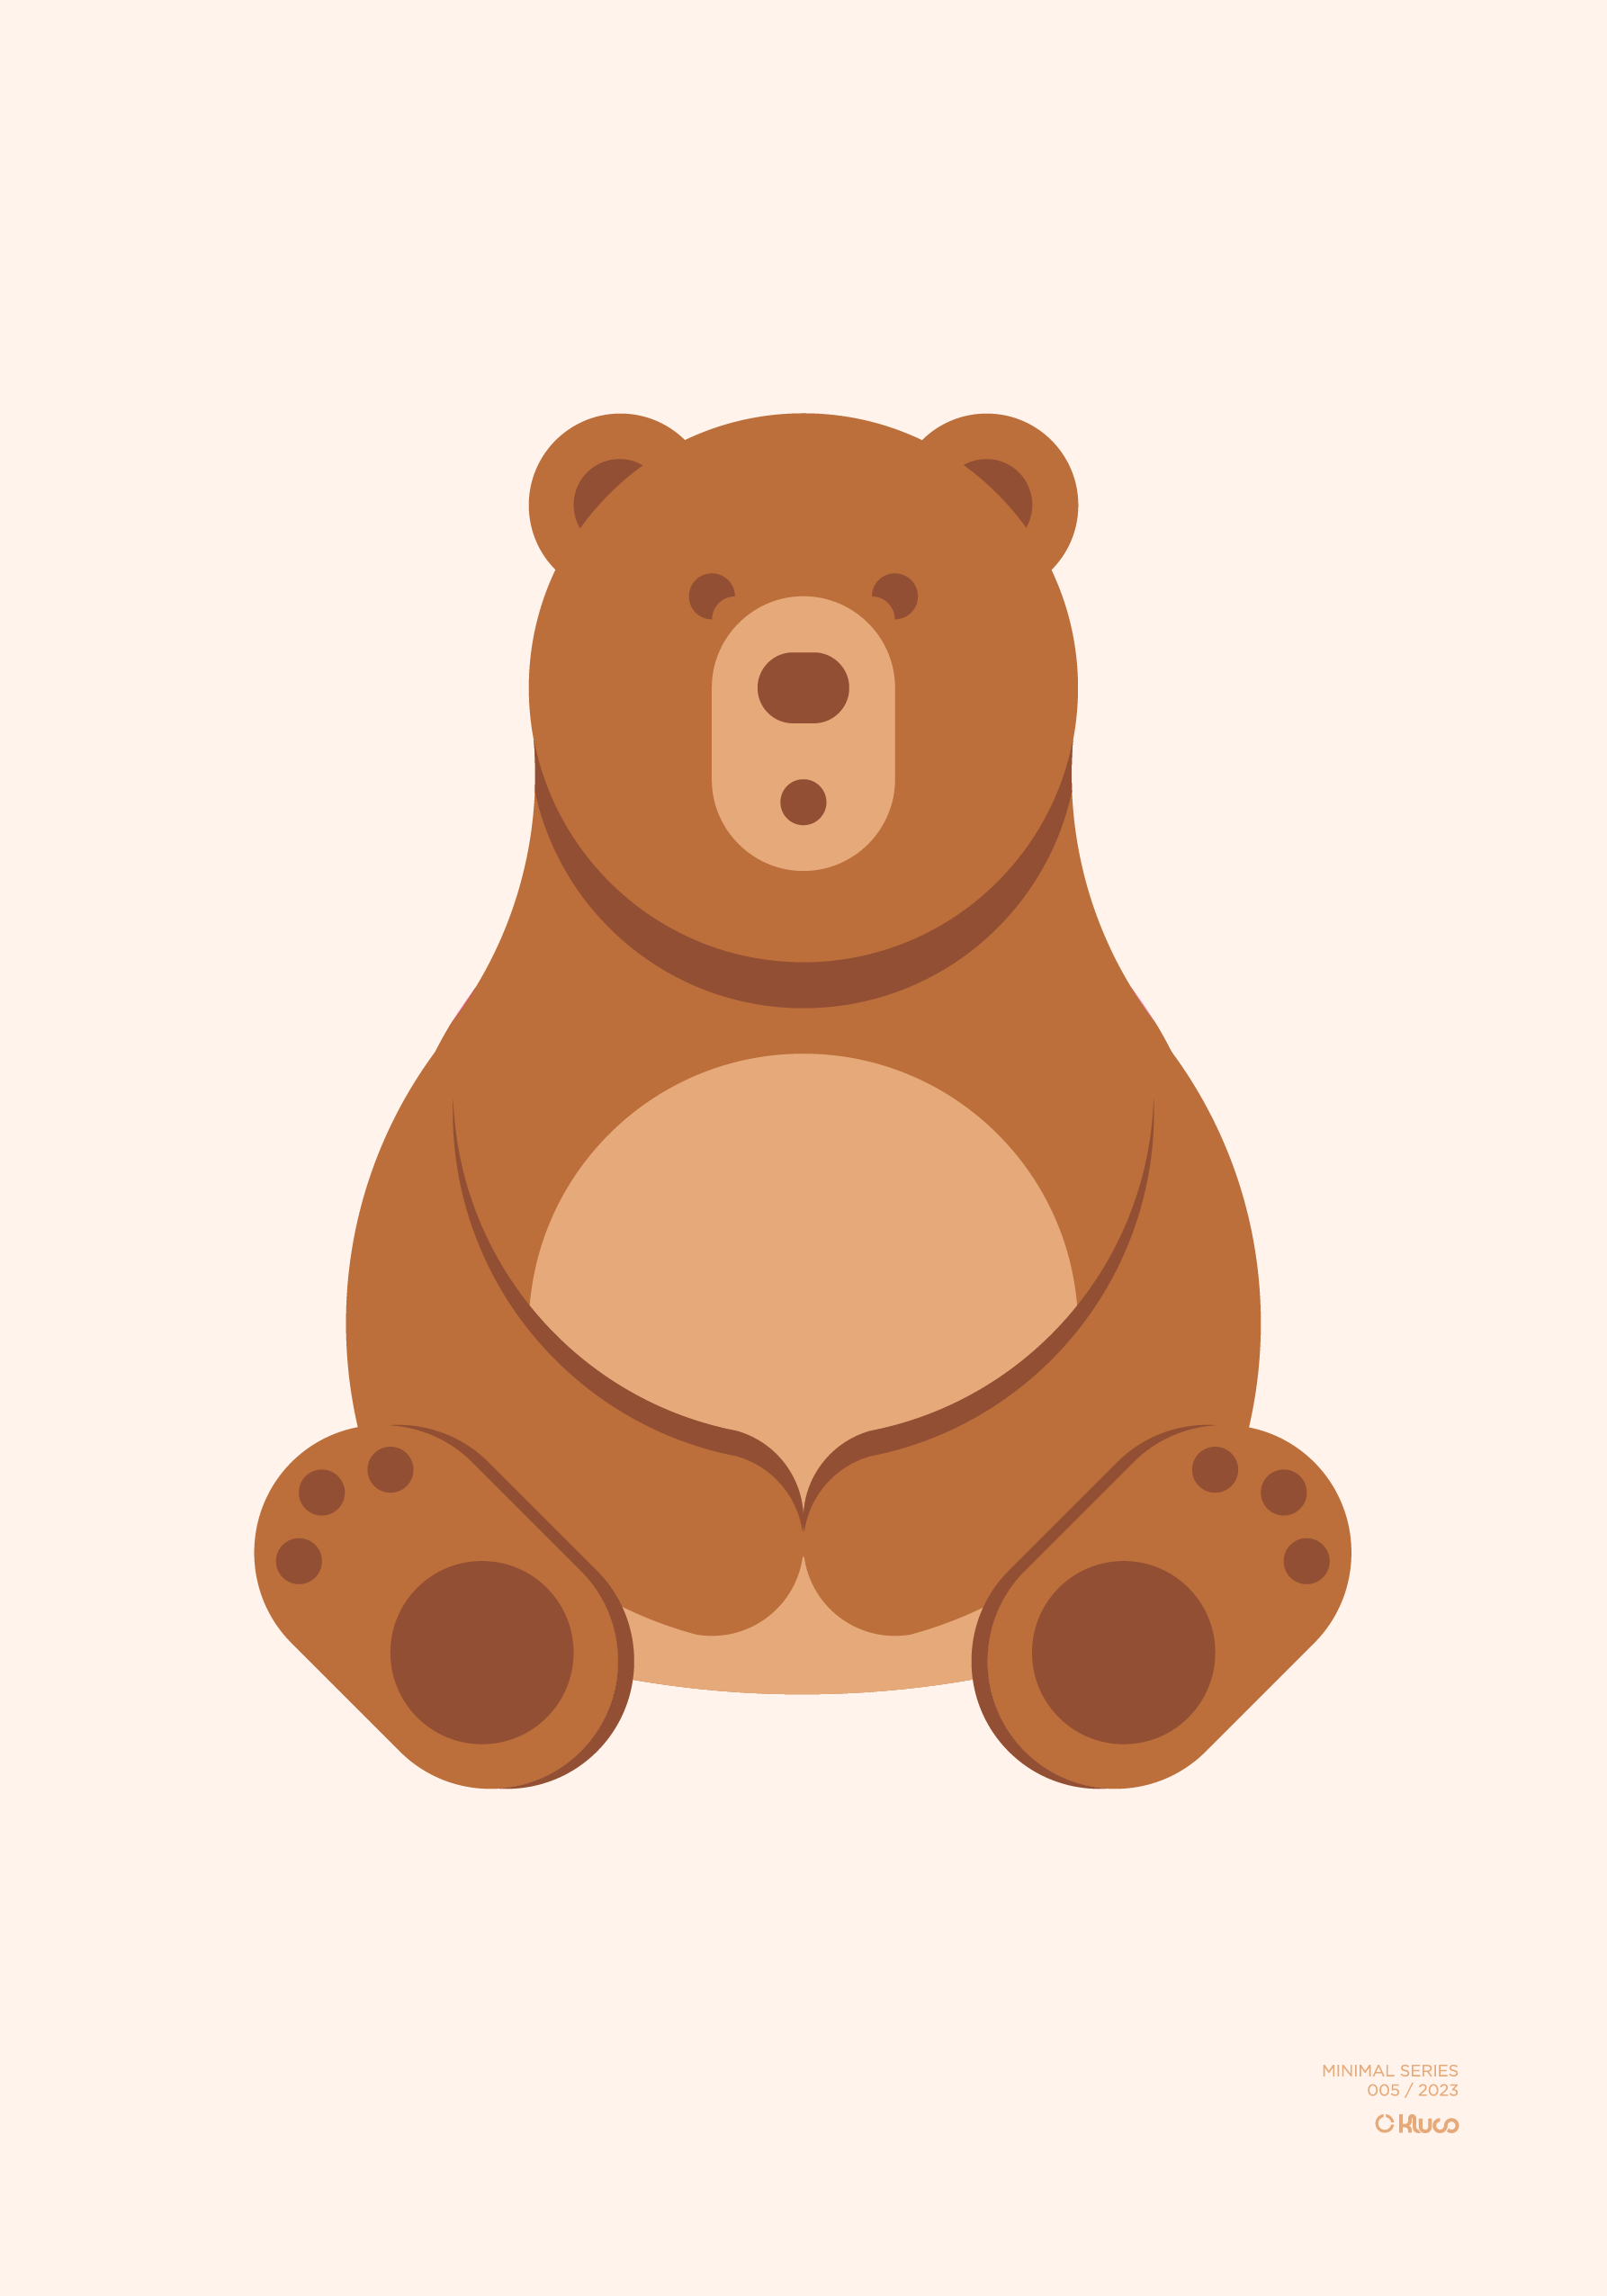 Póster minimalista de un oso